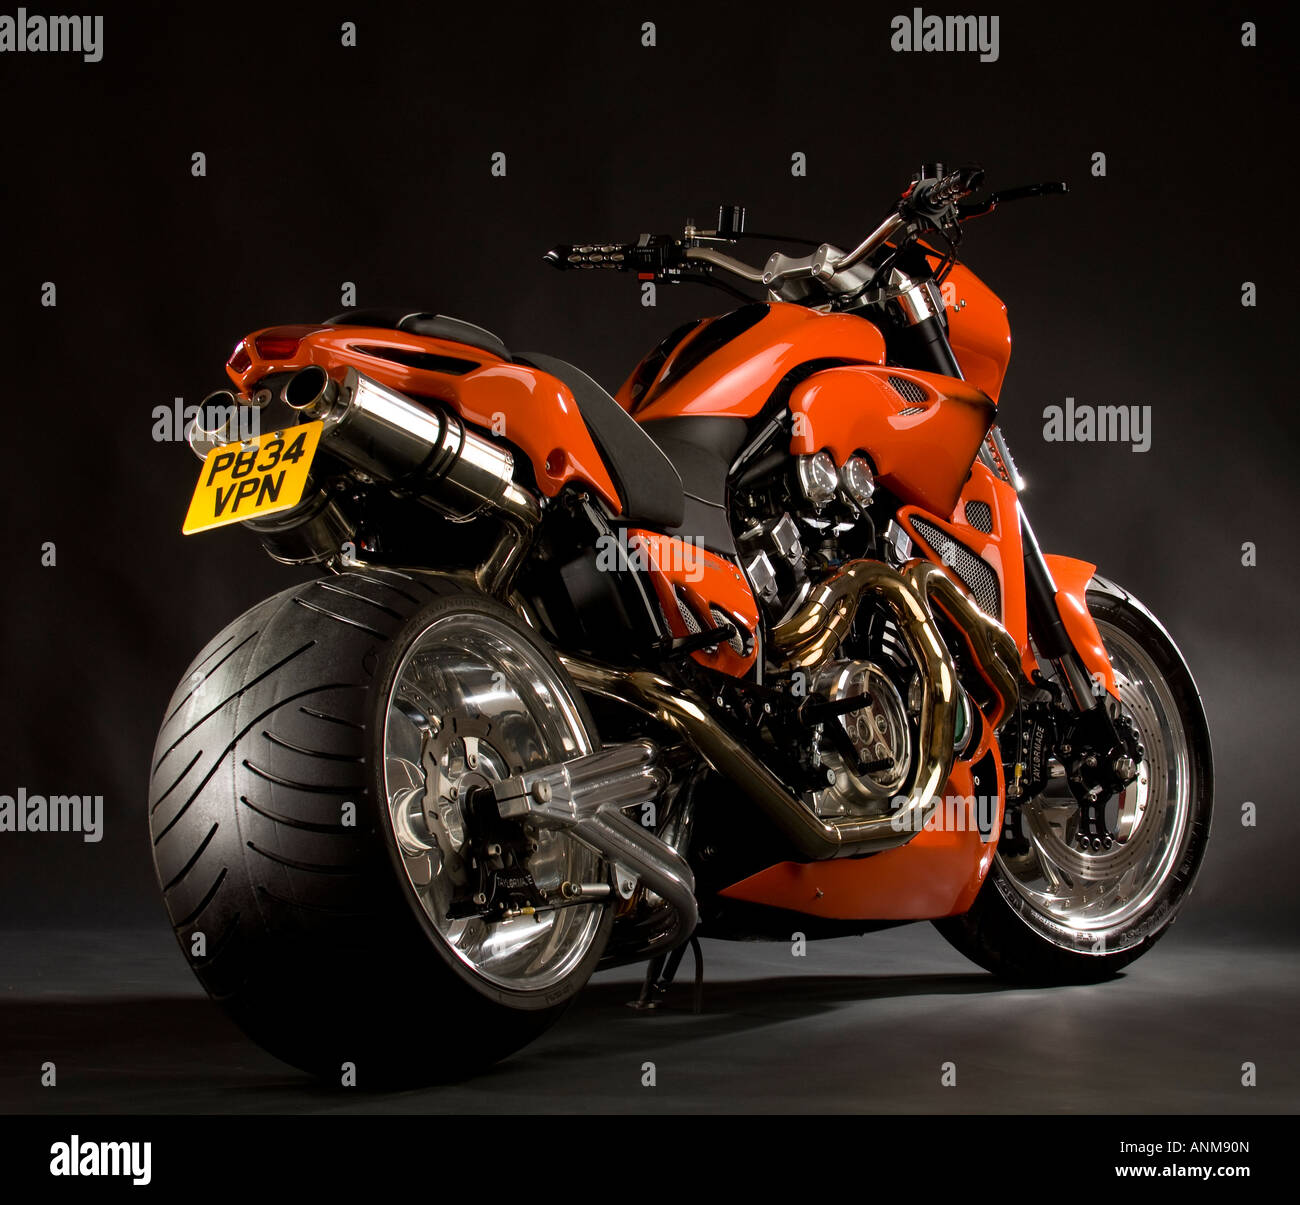 Yamaha v max motorcycle Banque de photographies et d'images à haute  résolution - Alamy